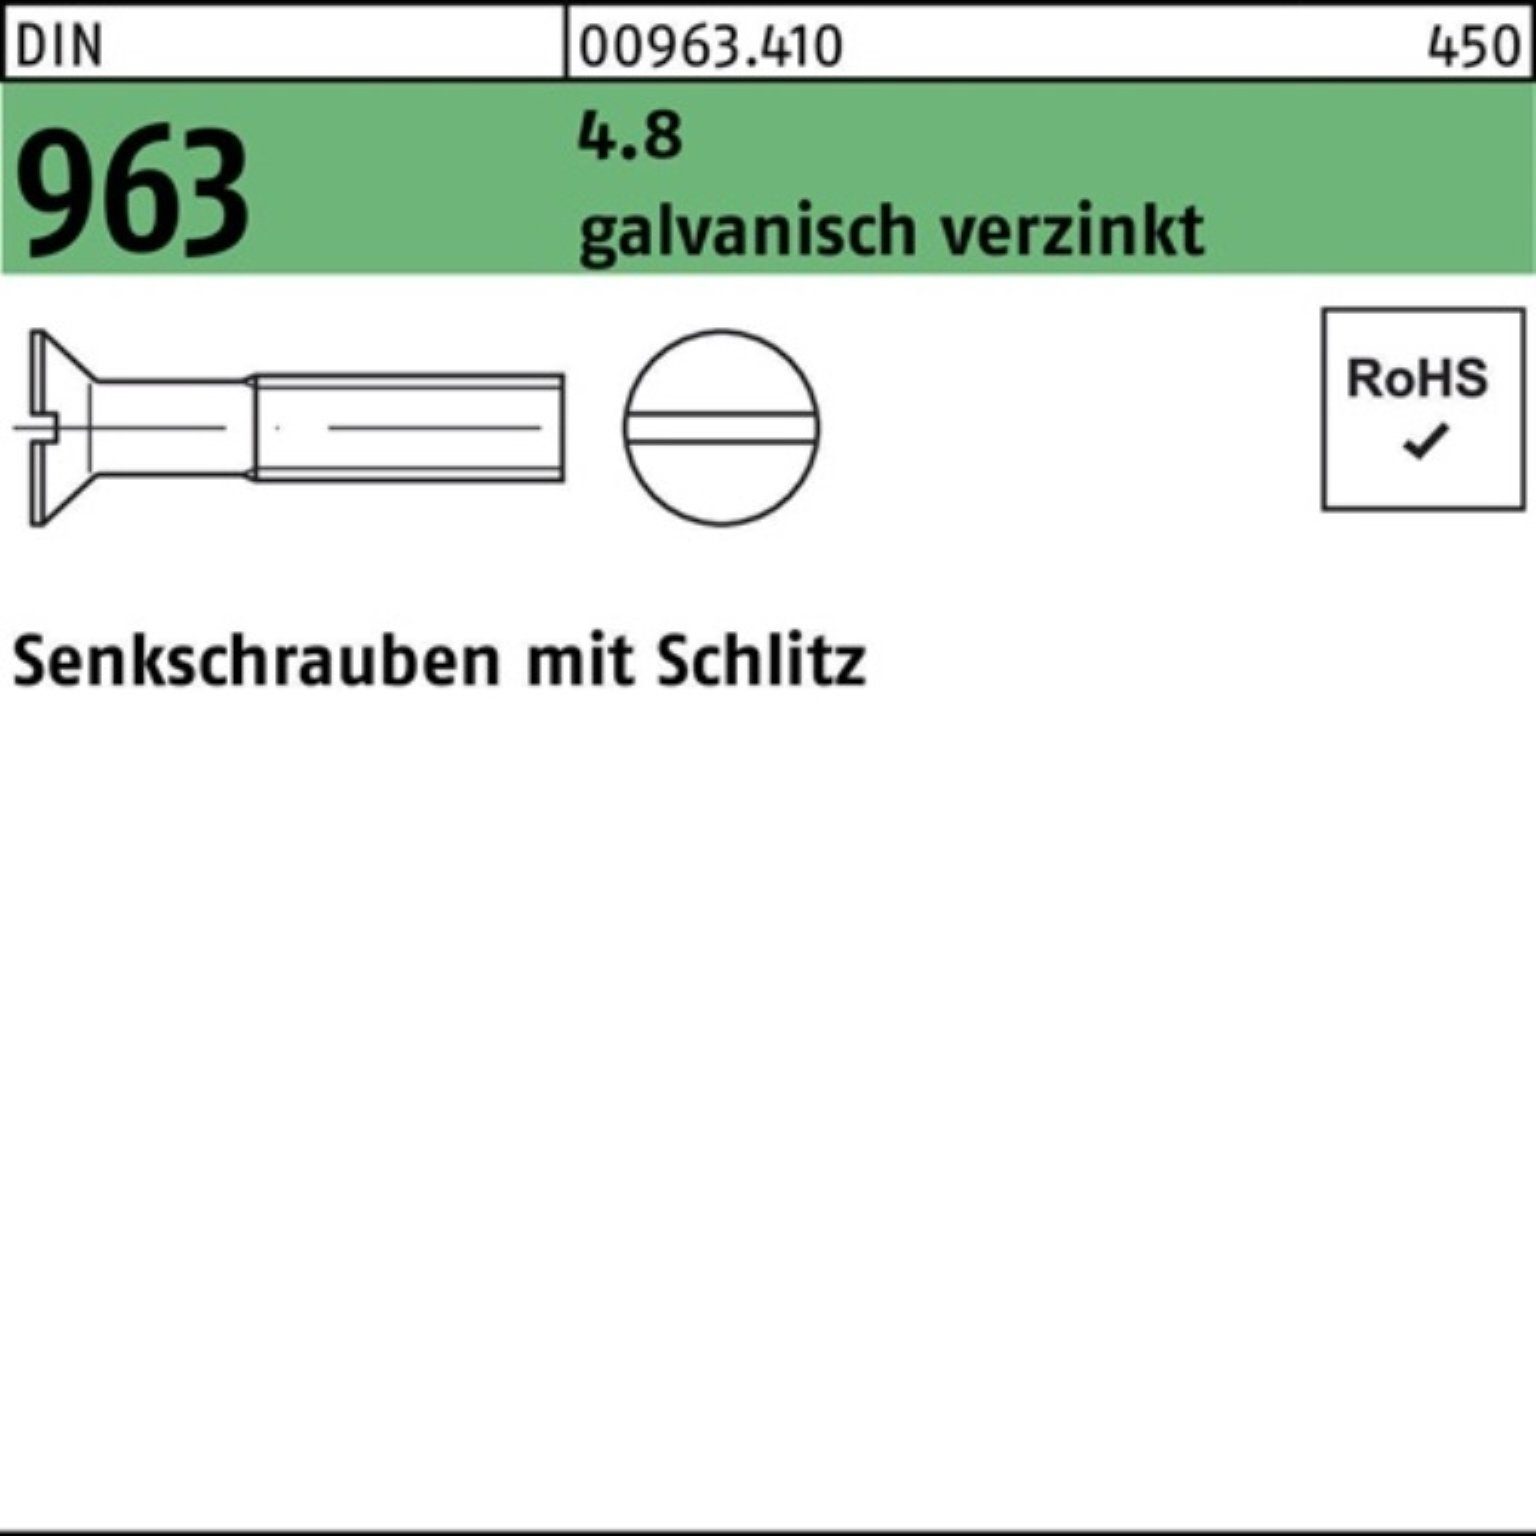 10 Schlitz Senkschraube galv.verz. 4.8 Senkschraube 963 Pack 2000 Reyher DIN M2x 2000er St